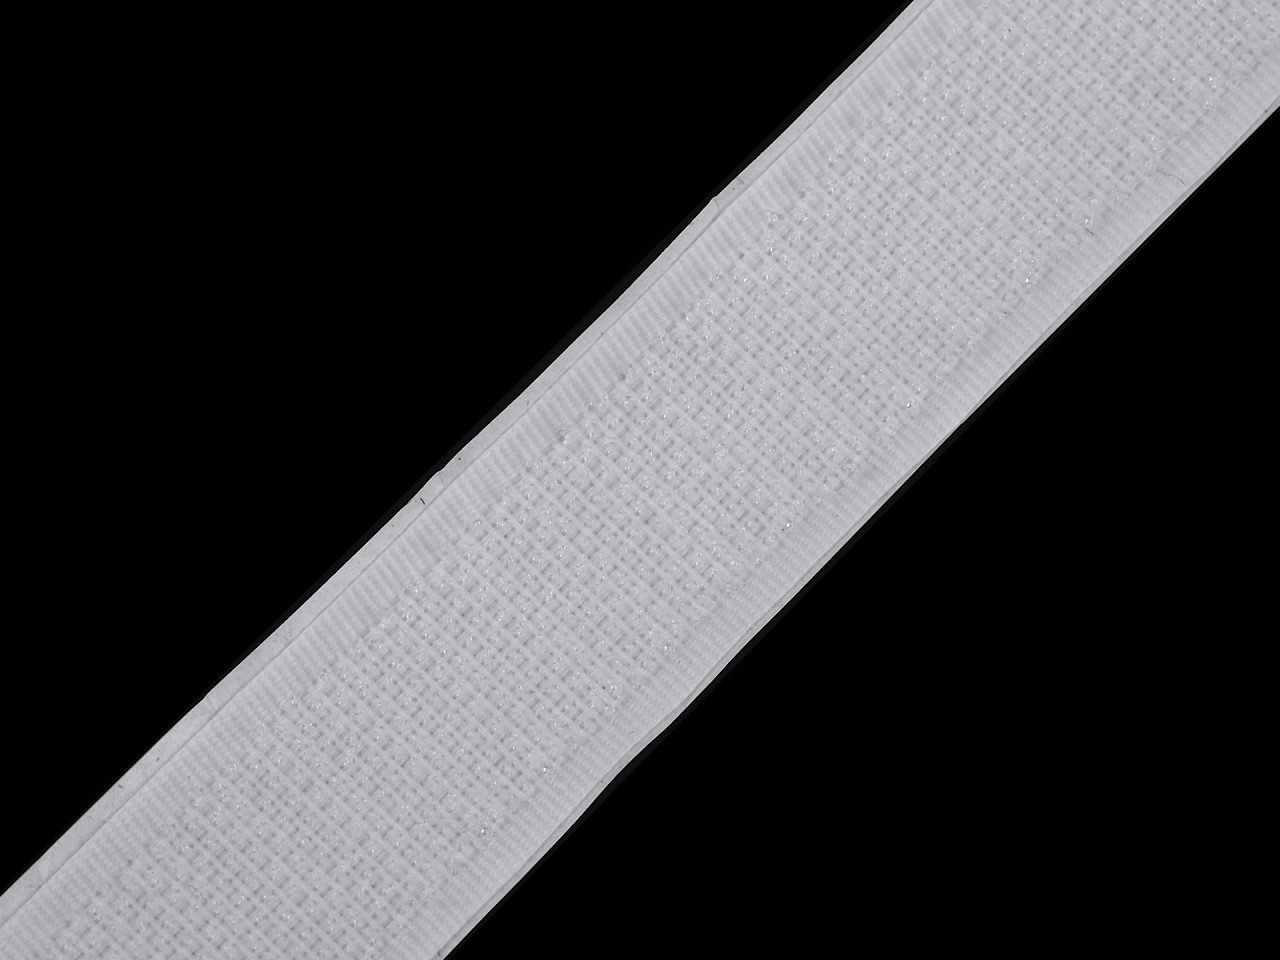 Suchý zip háček samolepicí šíře 20 mm, barva bílá